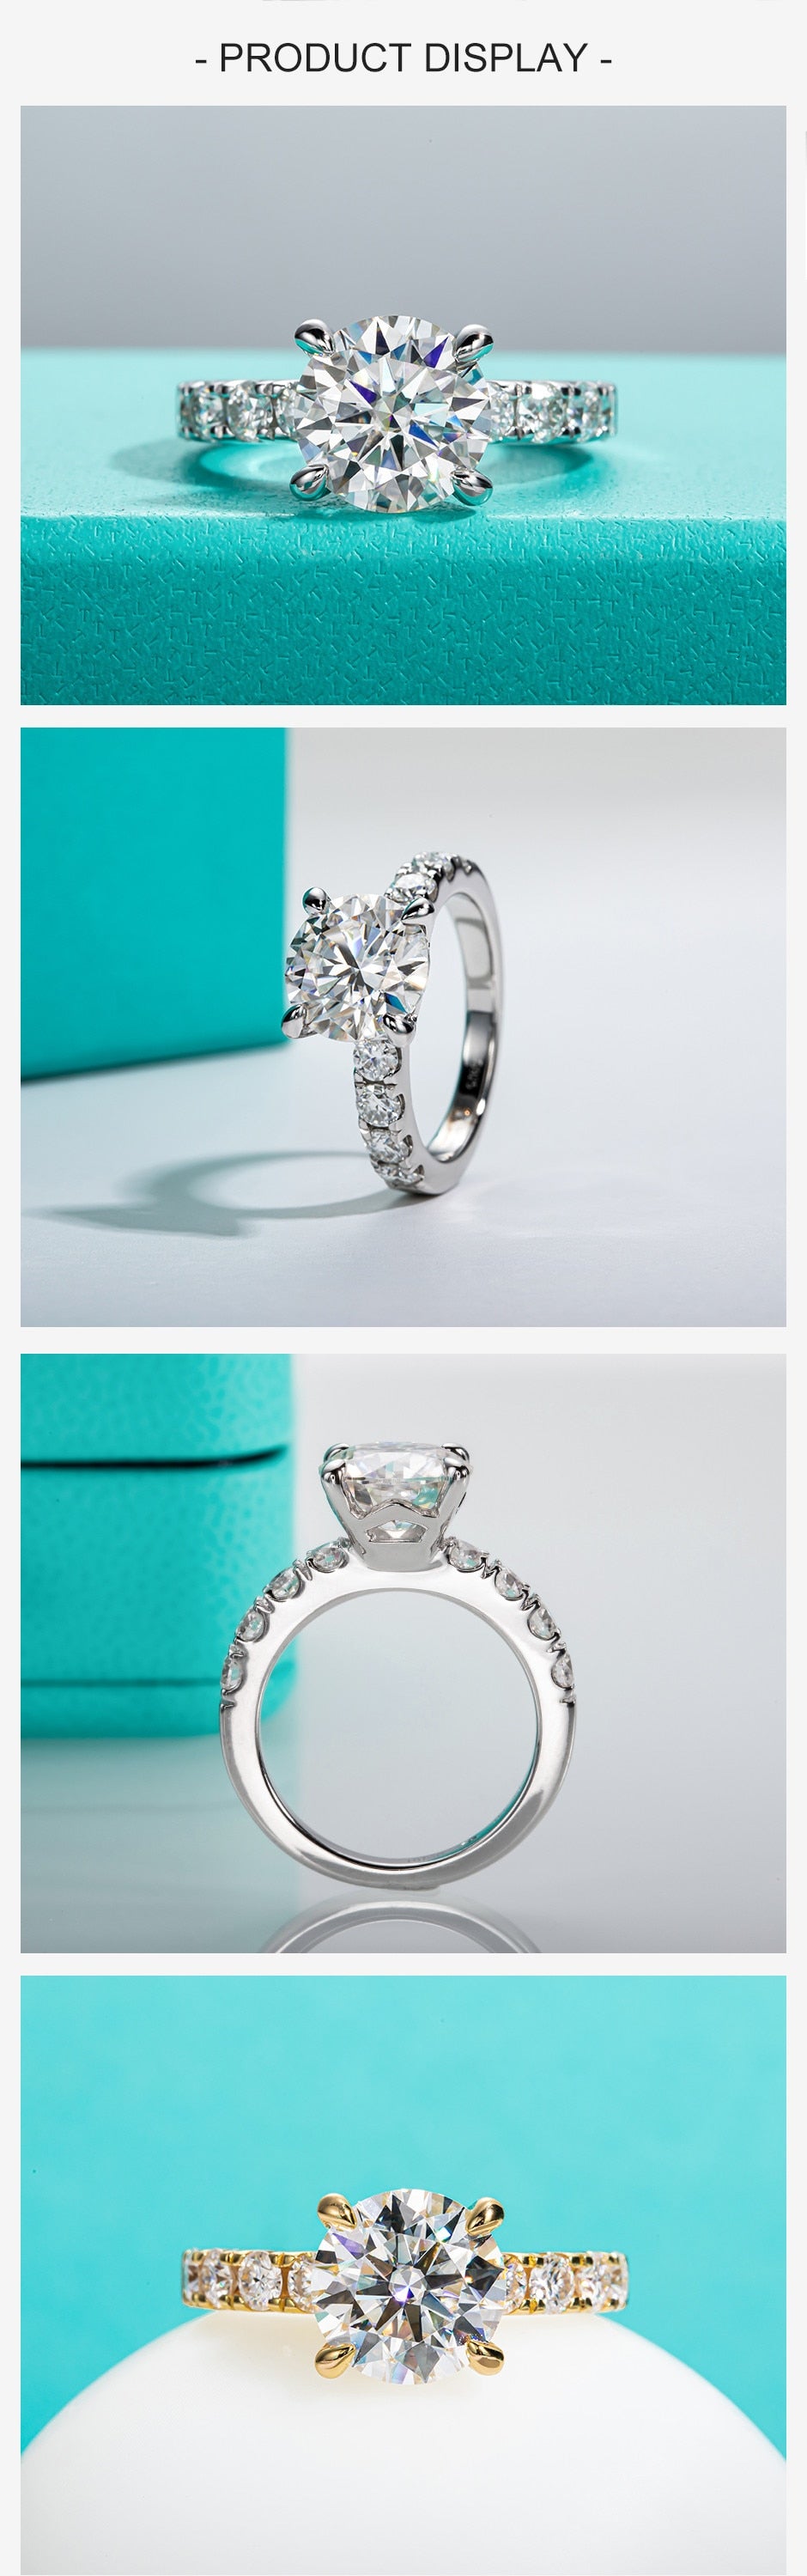 Lab-diamond 4.3cttw D Color Engagement Ring